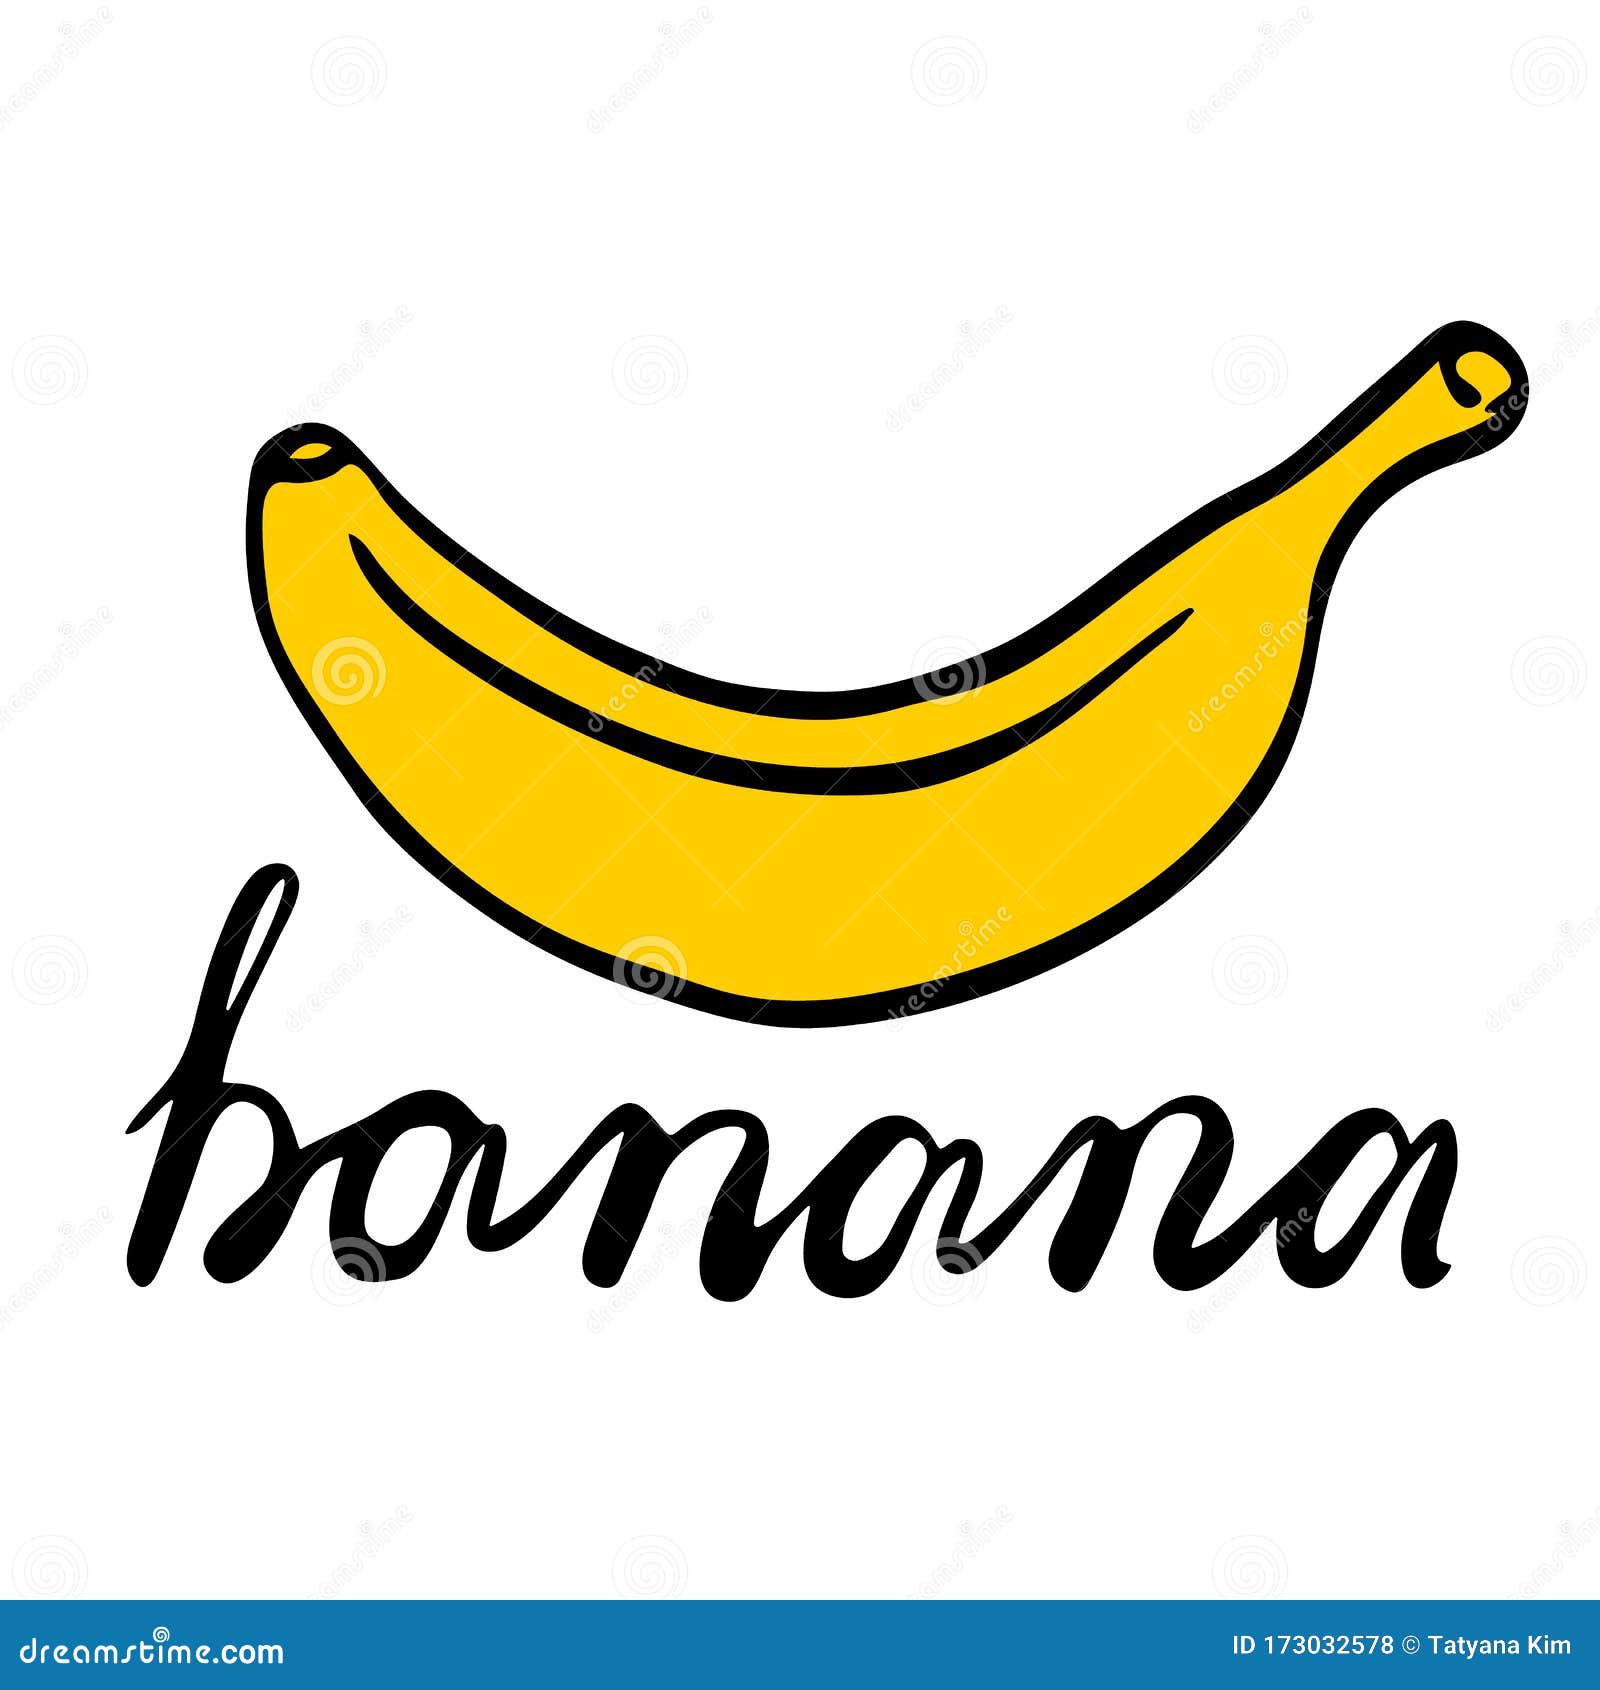 Banana Sketch Images - Free Download on Freepik